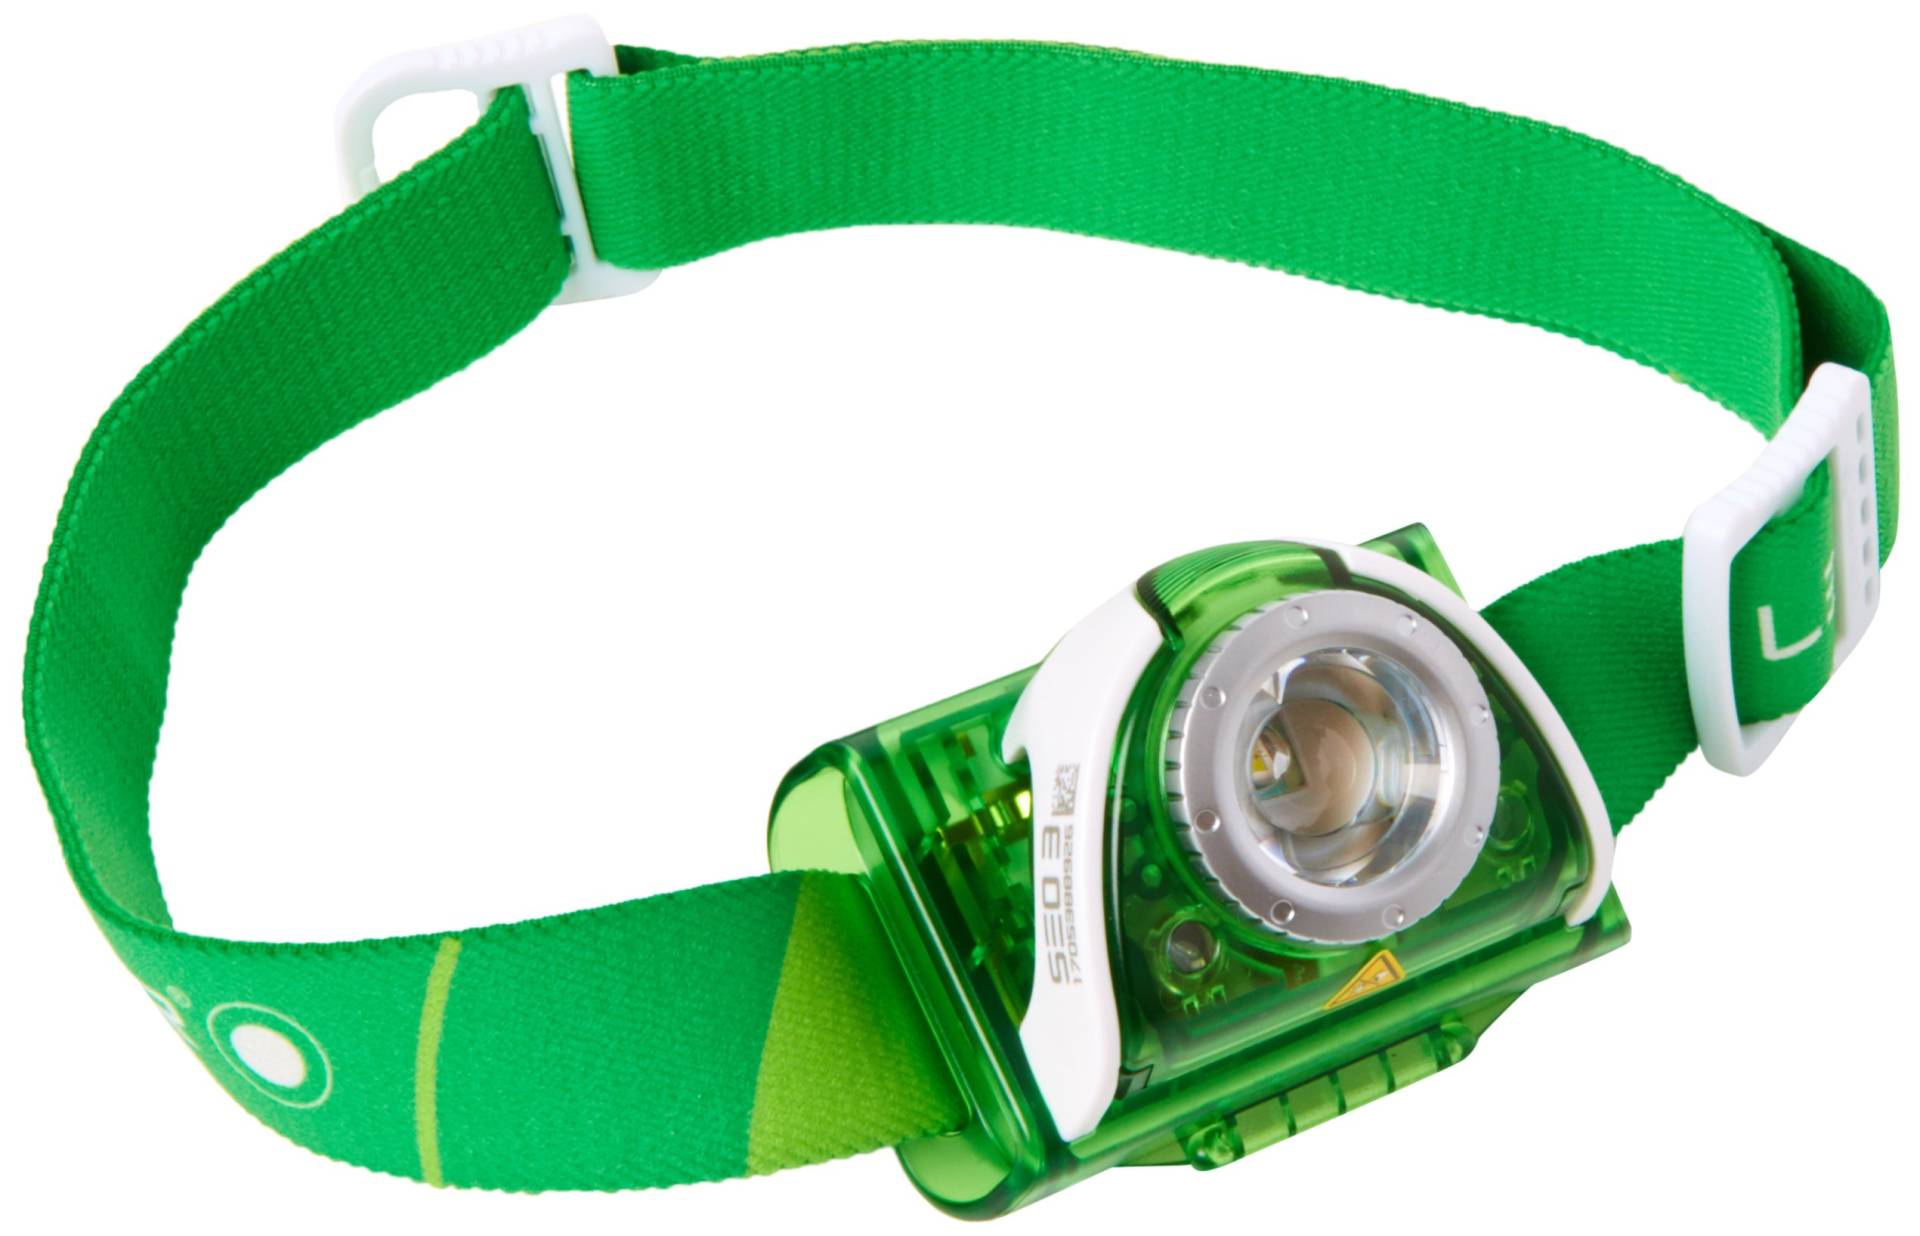 LED Lenser Taschenlampe SEO 3, grün 6003 von Ledlenser